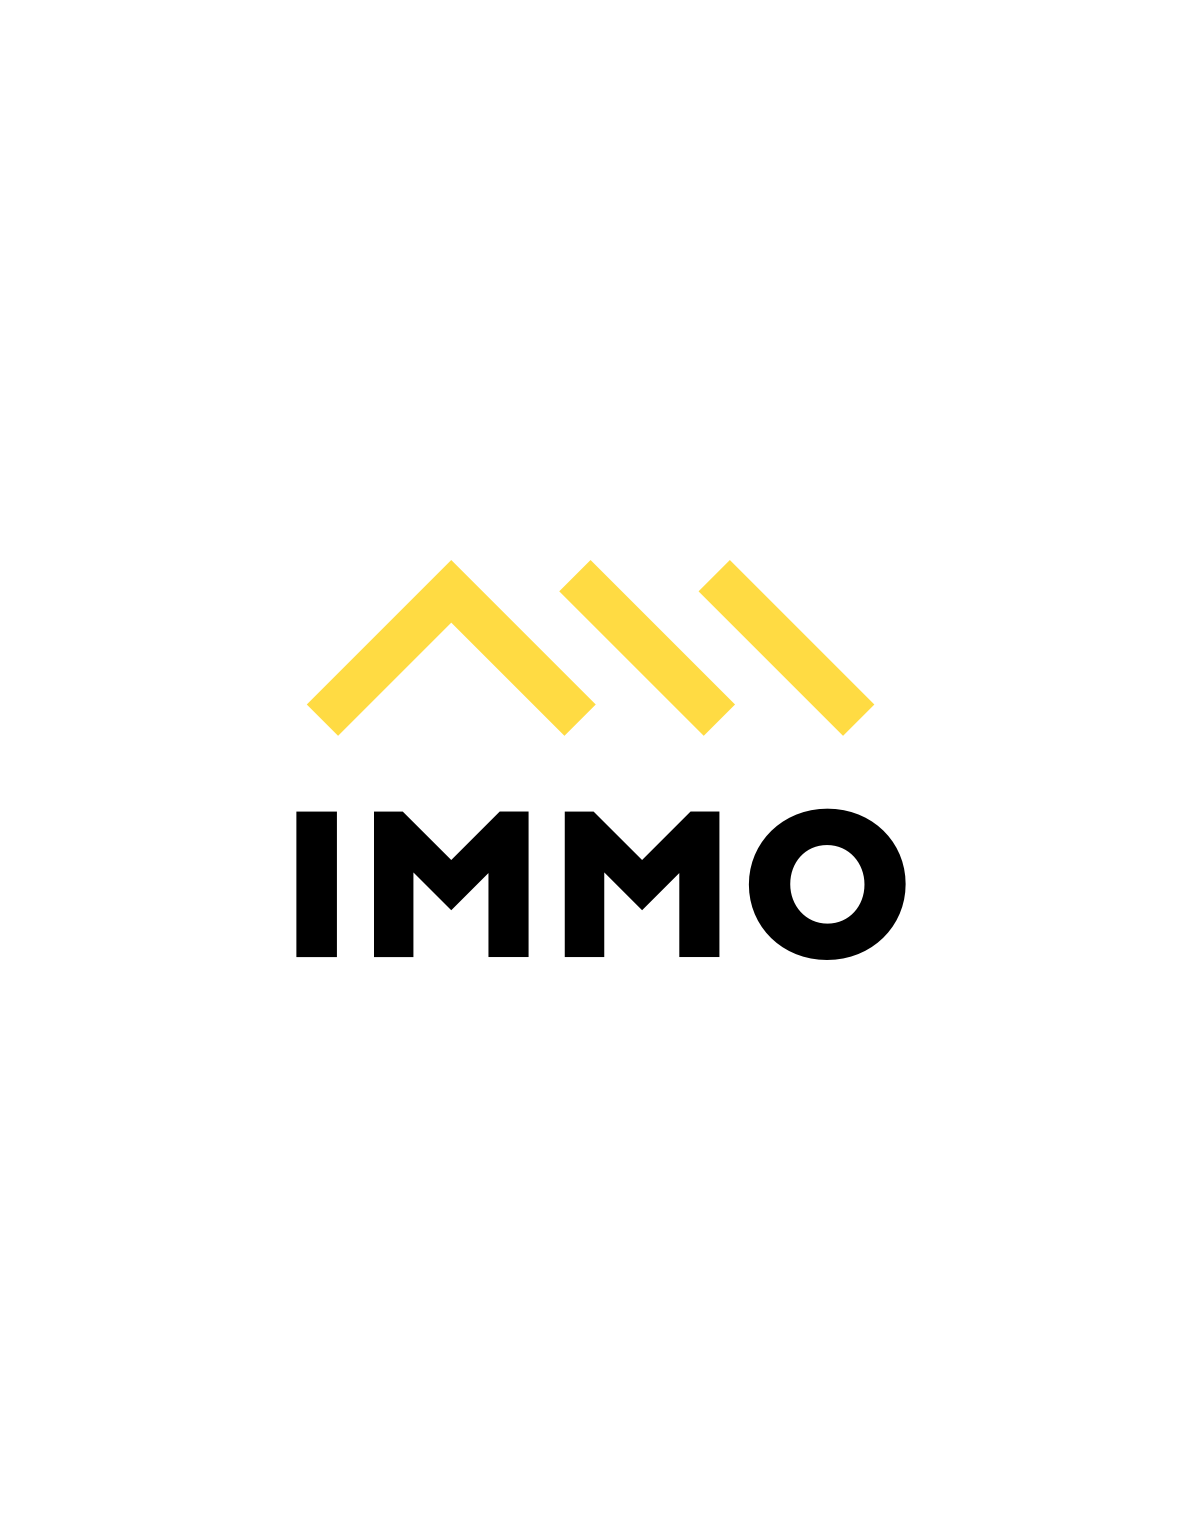 Immo logo animation